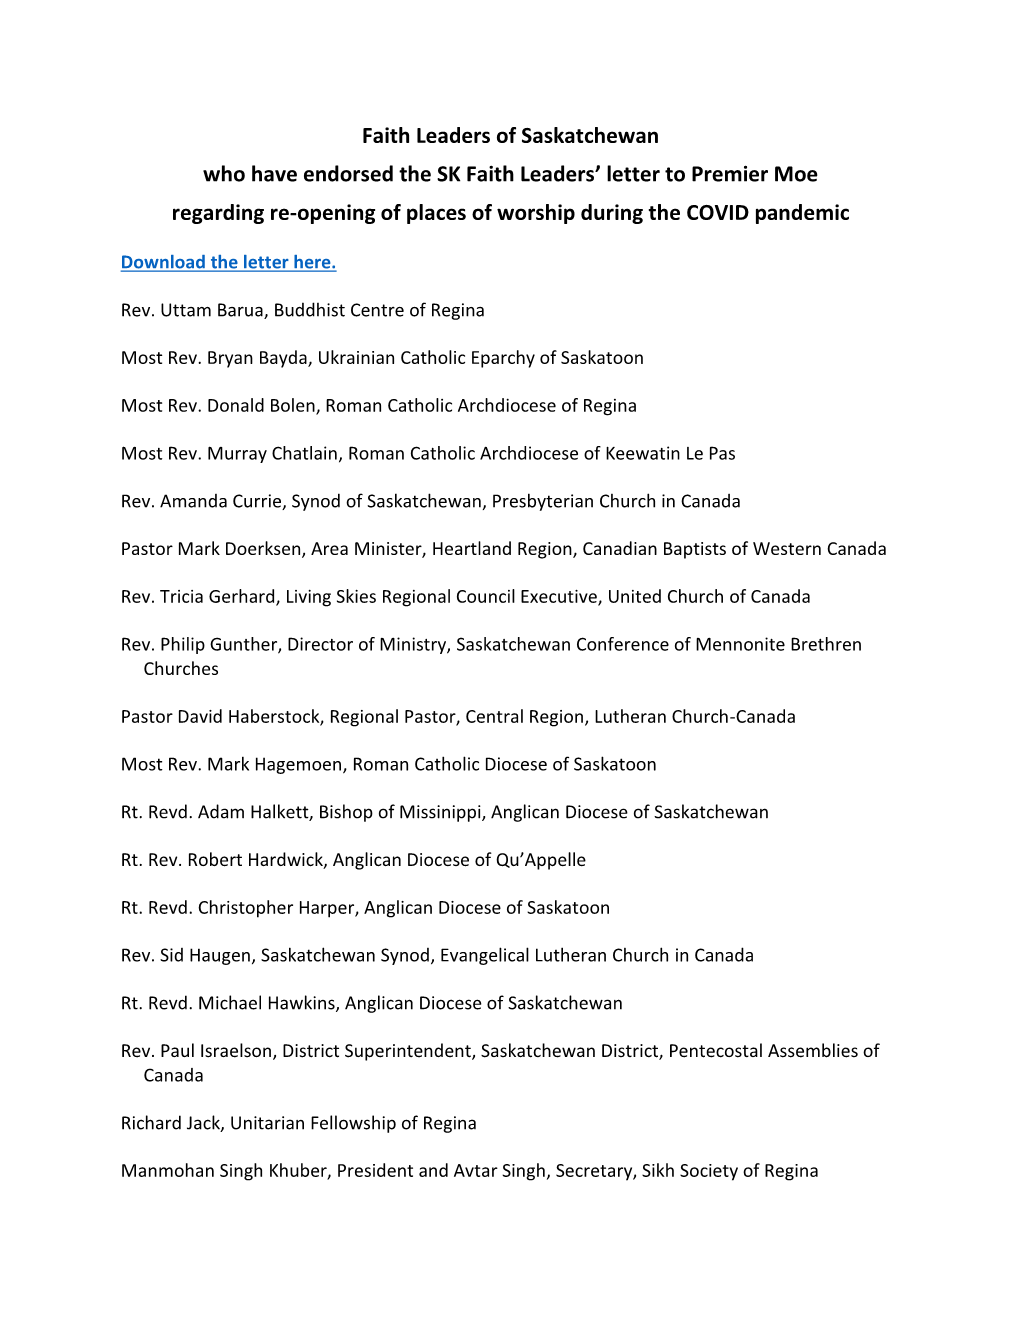 List of Participating Faith Leaders of Saskatchewan